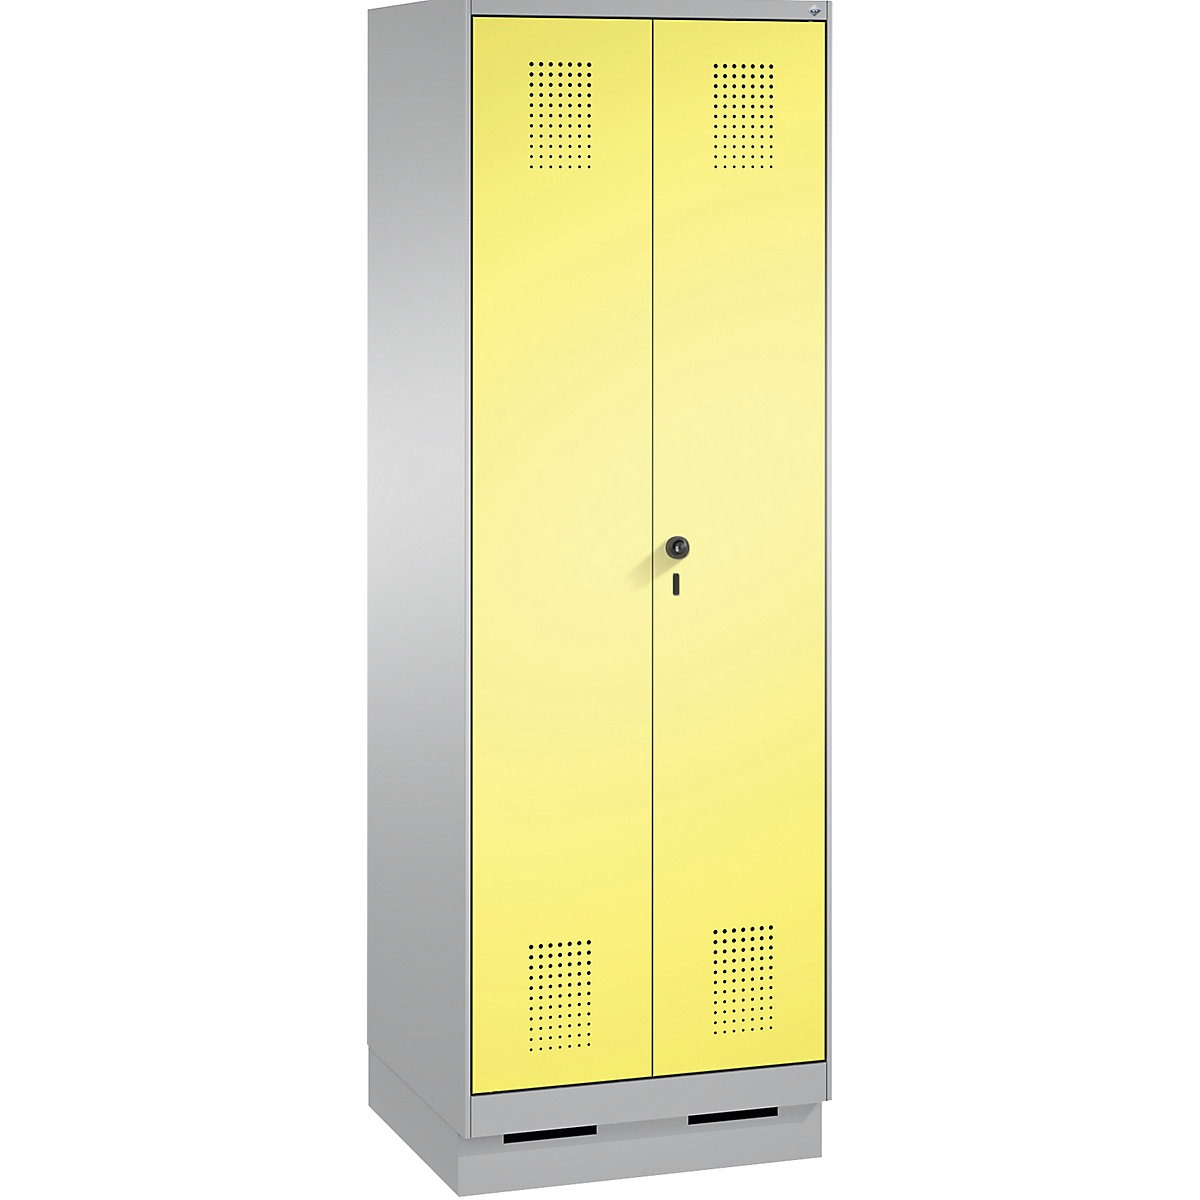 Úklidová/přístrojová skříň EVOLO – C+P, zkrácená dělicí stěna, 6 háků, oddíly 2 x 300 mm, se soklem, bílý hliník / sírová žlutá-6